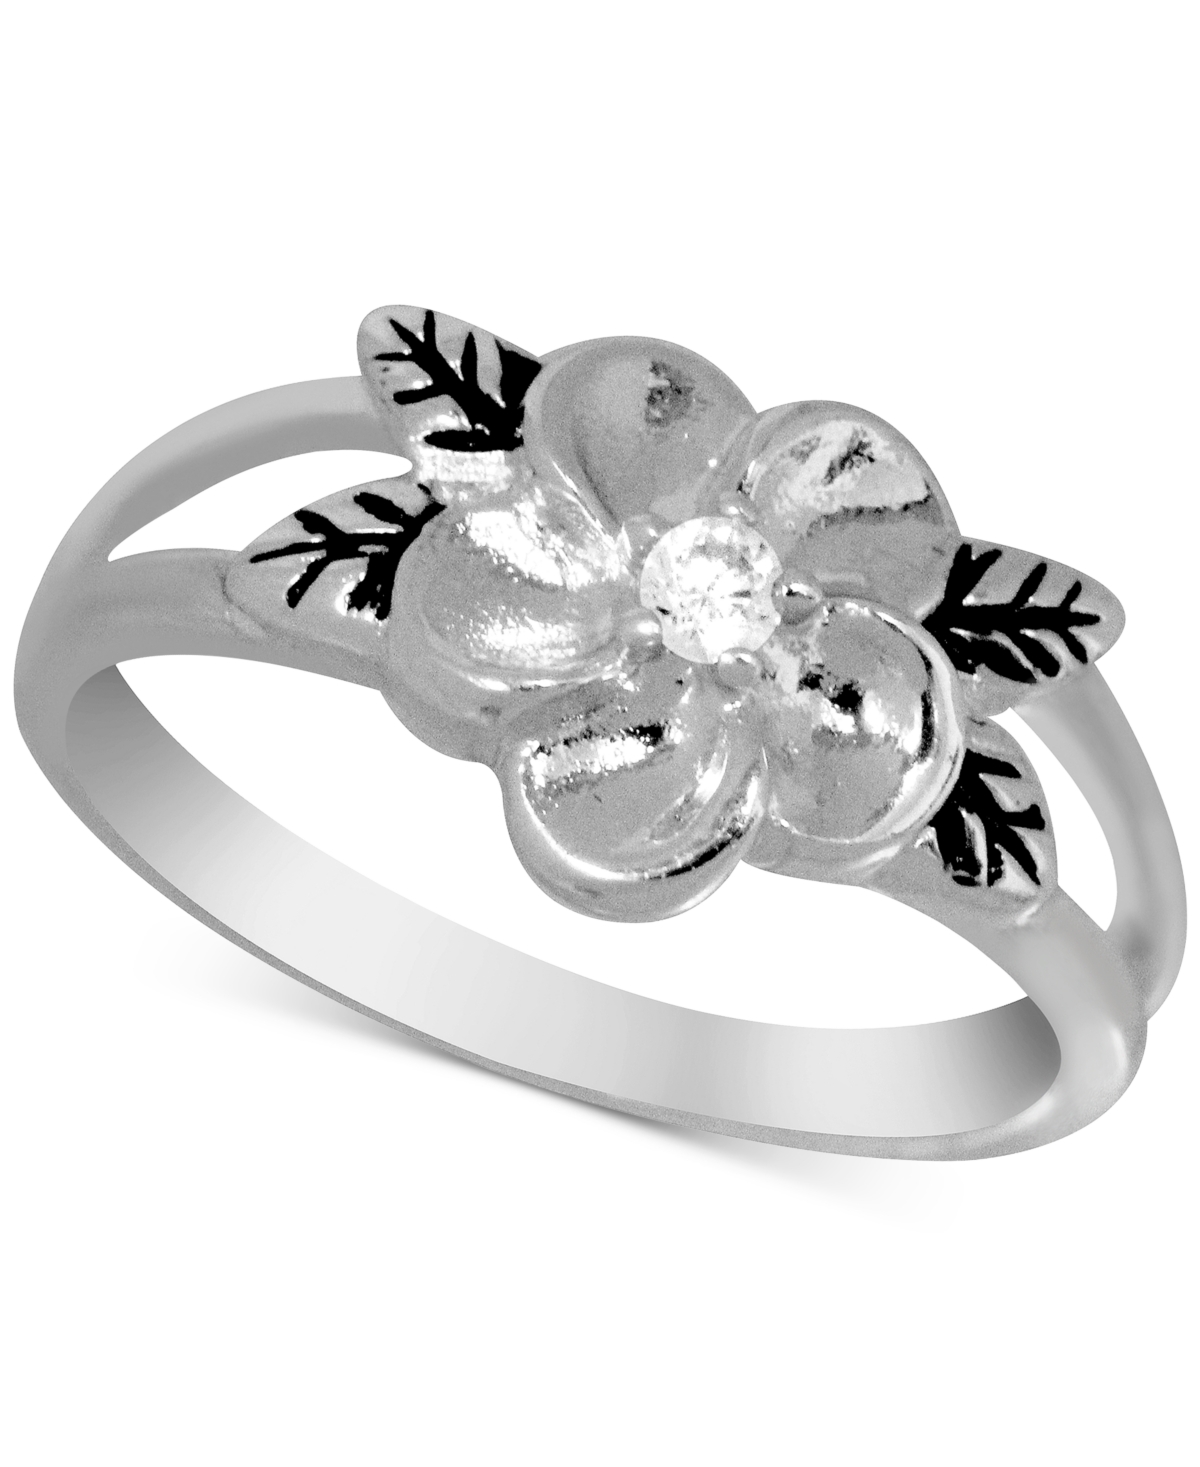 Kona Bay Flower Ring in Silver-Plate